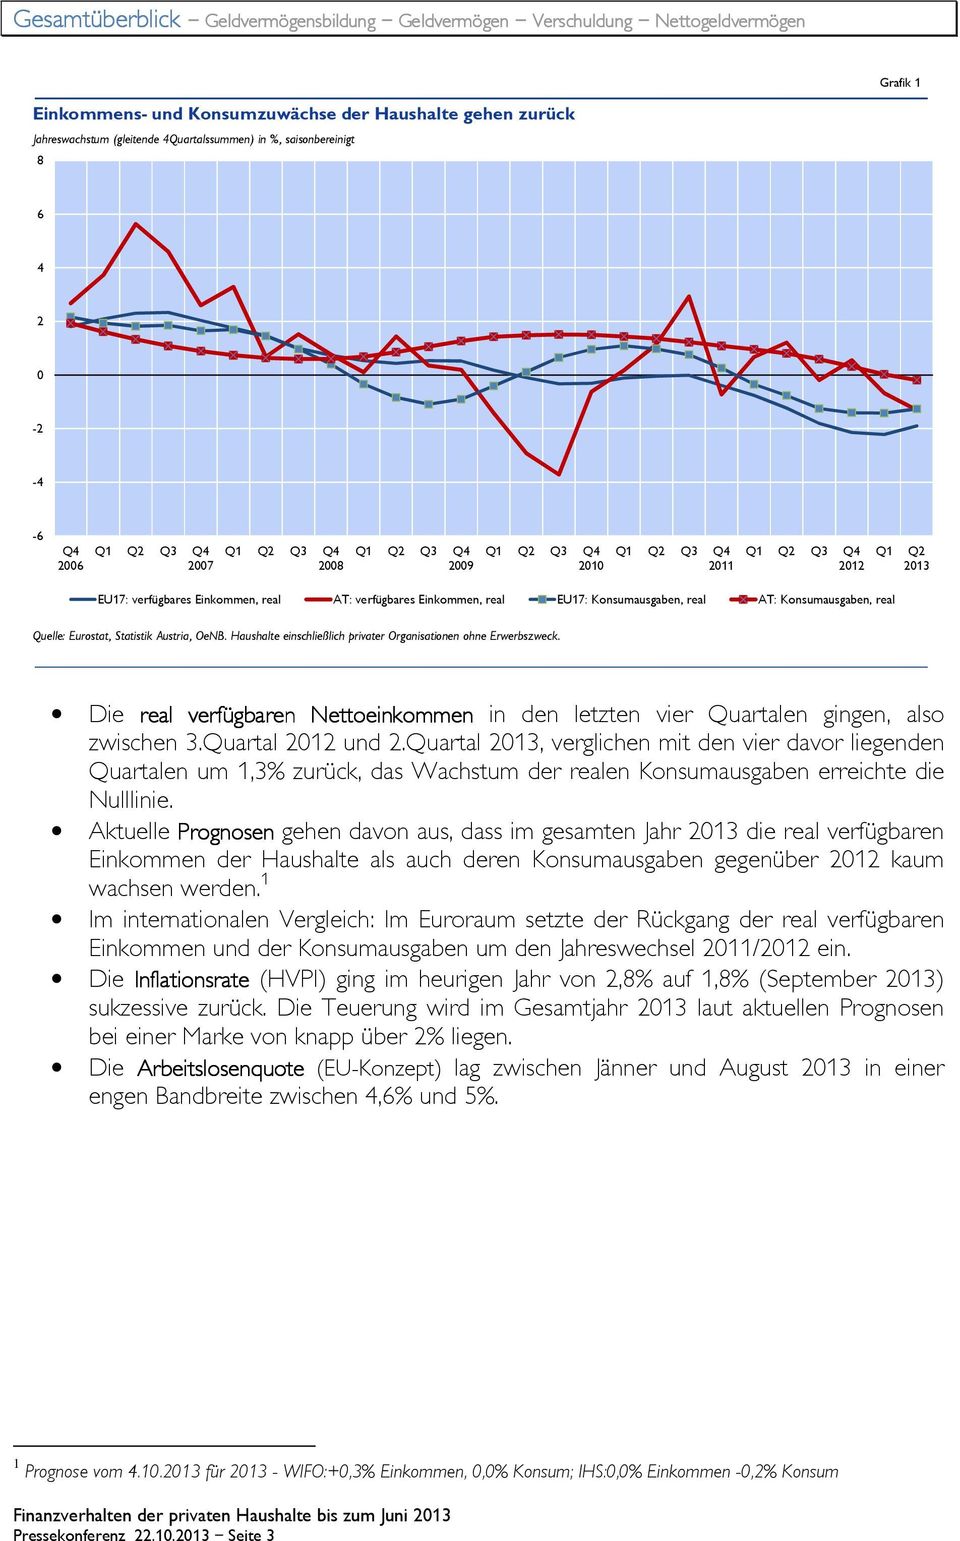 AT: Konsumausgaben, real Quelle: Eurostat, Statistik Austria, OeNB. Haushalte einschließlich privater Organisationen ohne Erwerbszweck.